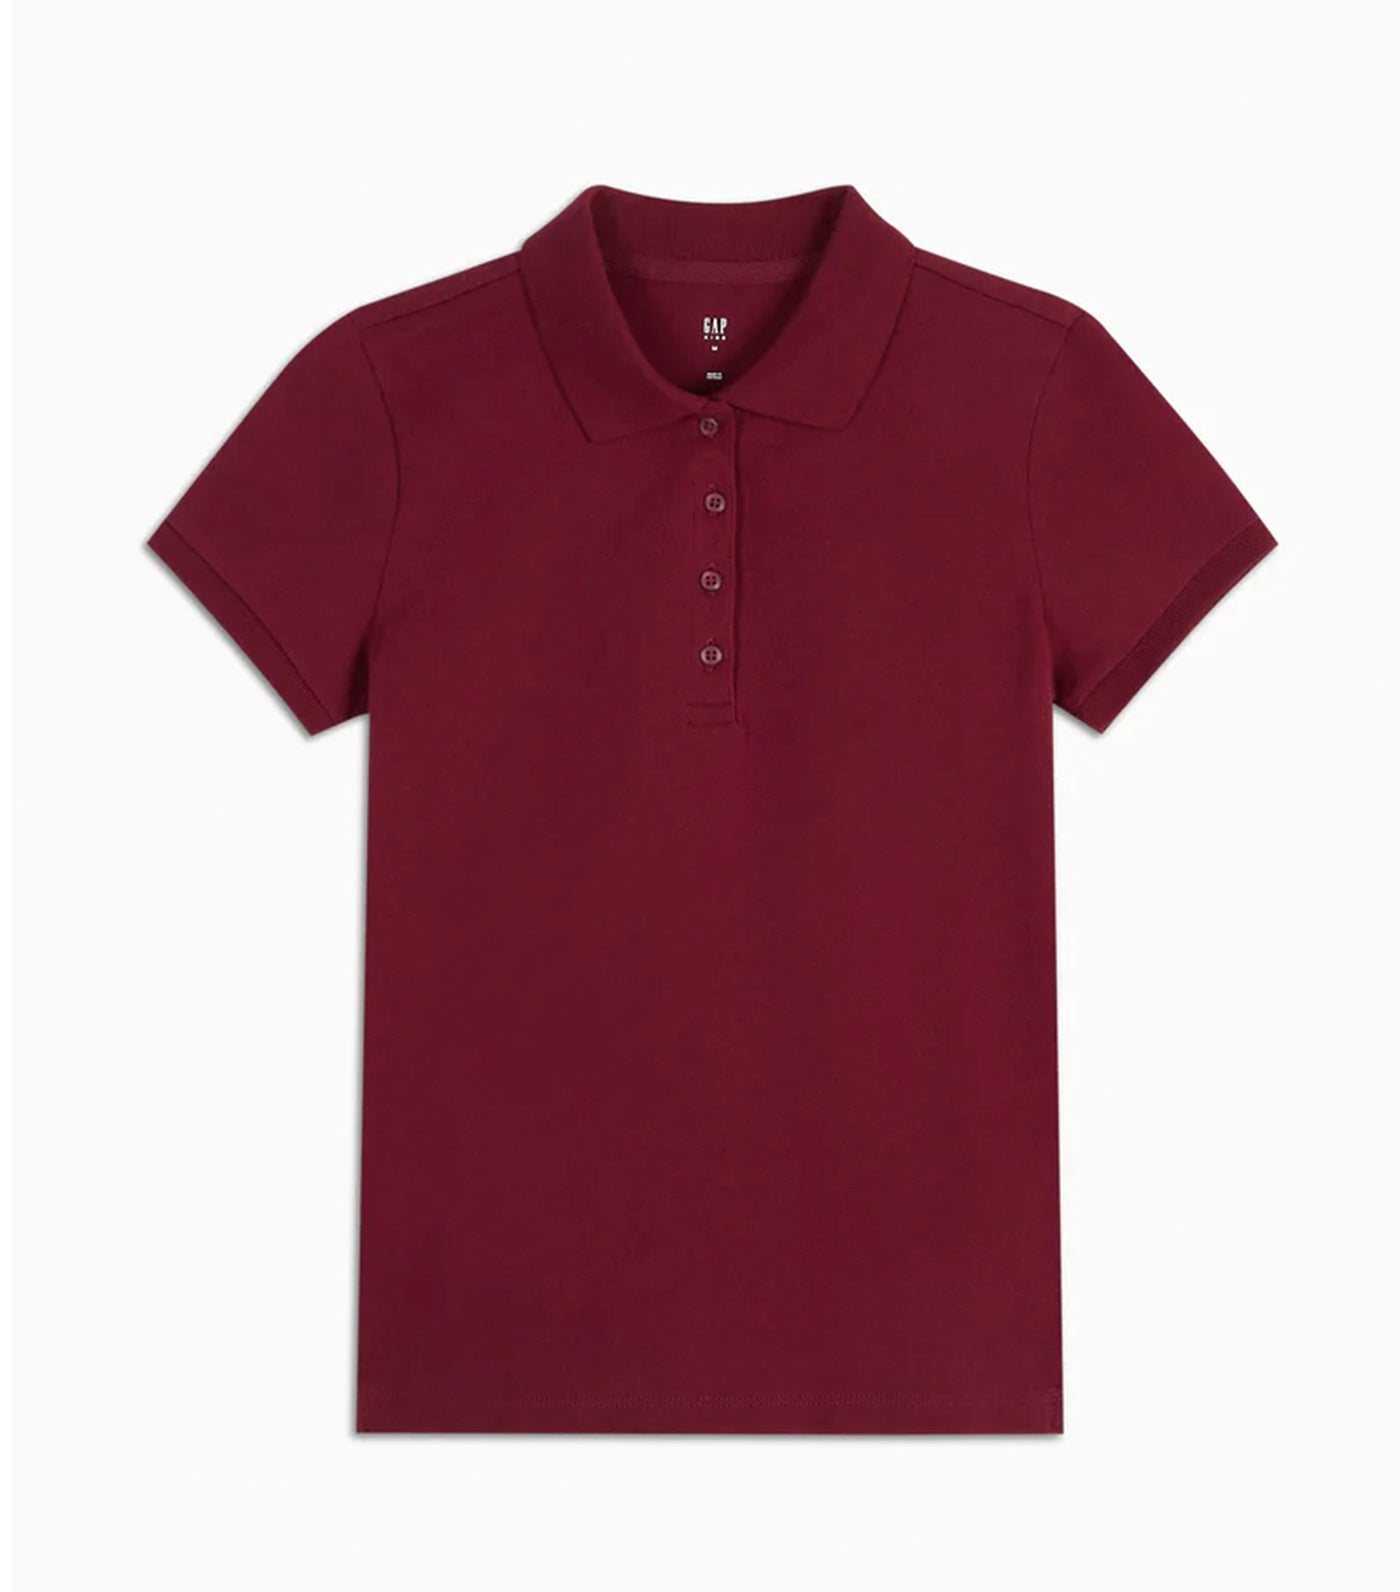 Uniform Stretch Pique Polo Shirt - Red Delicious